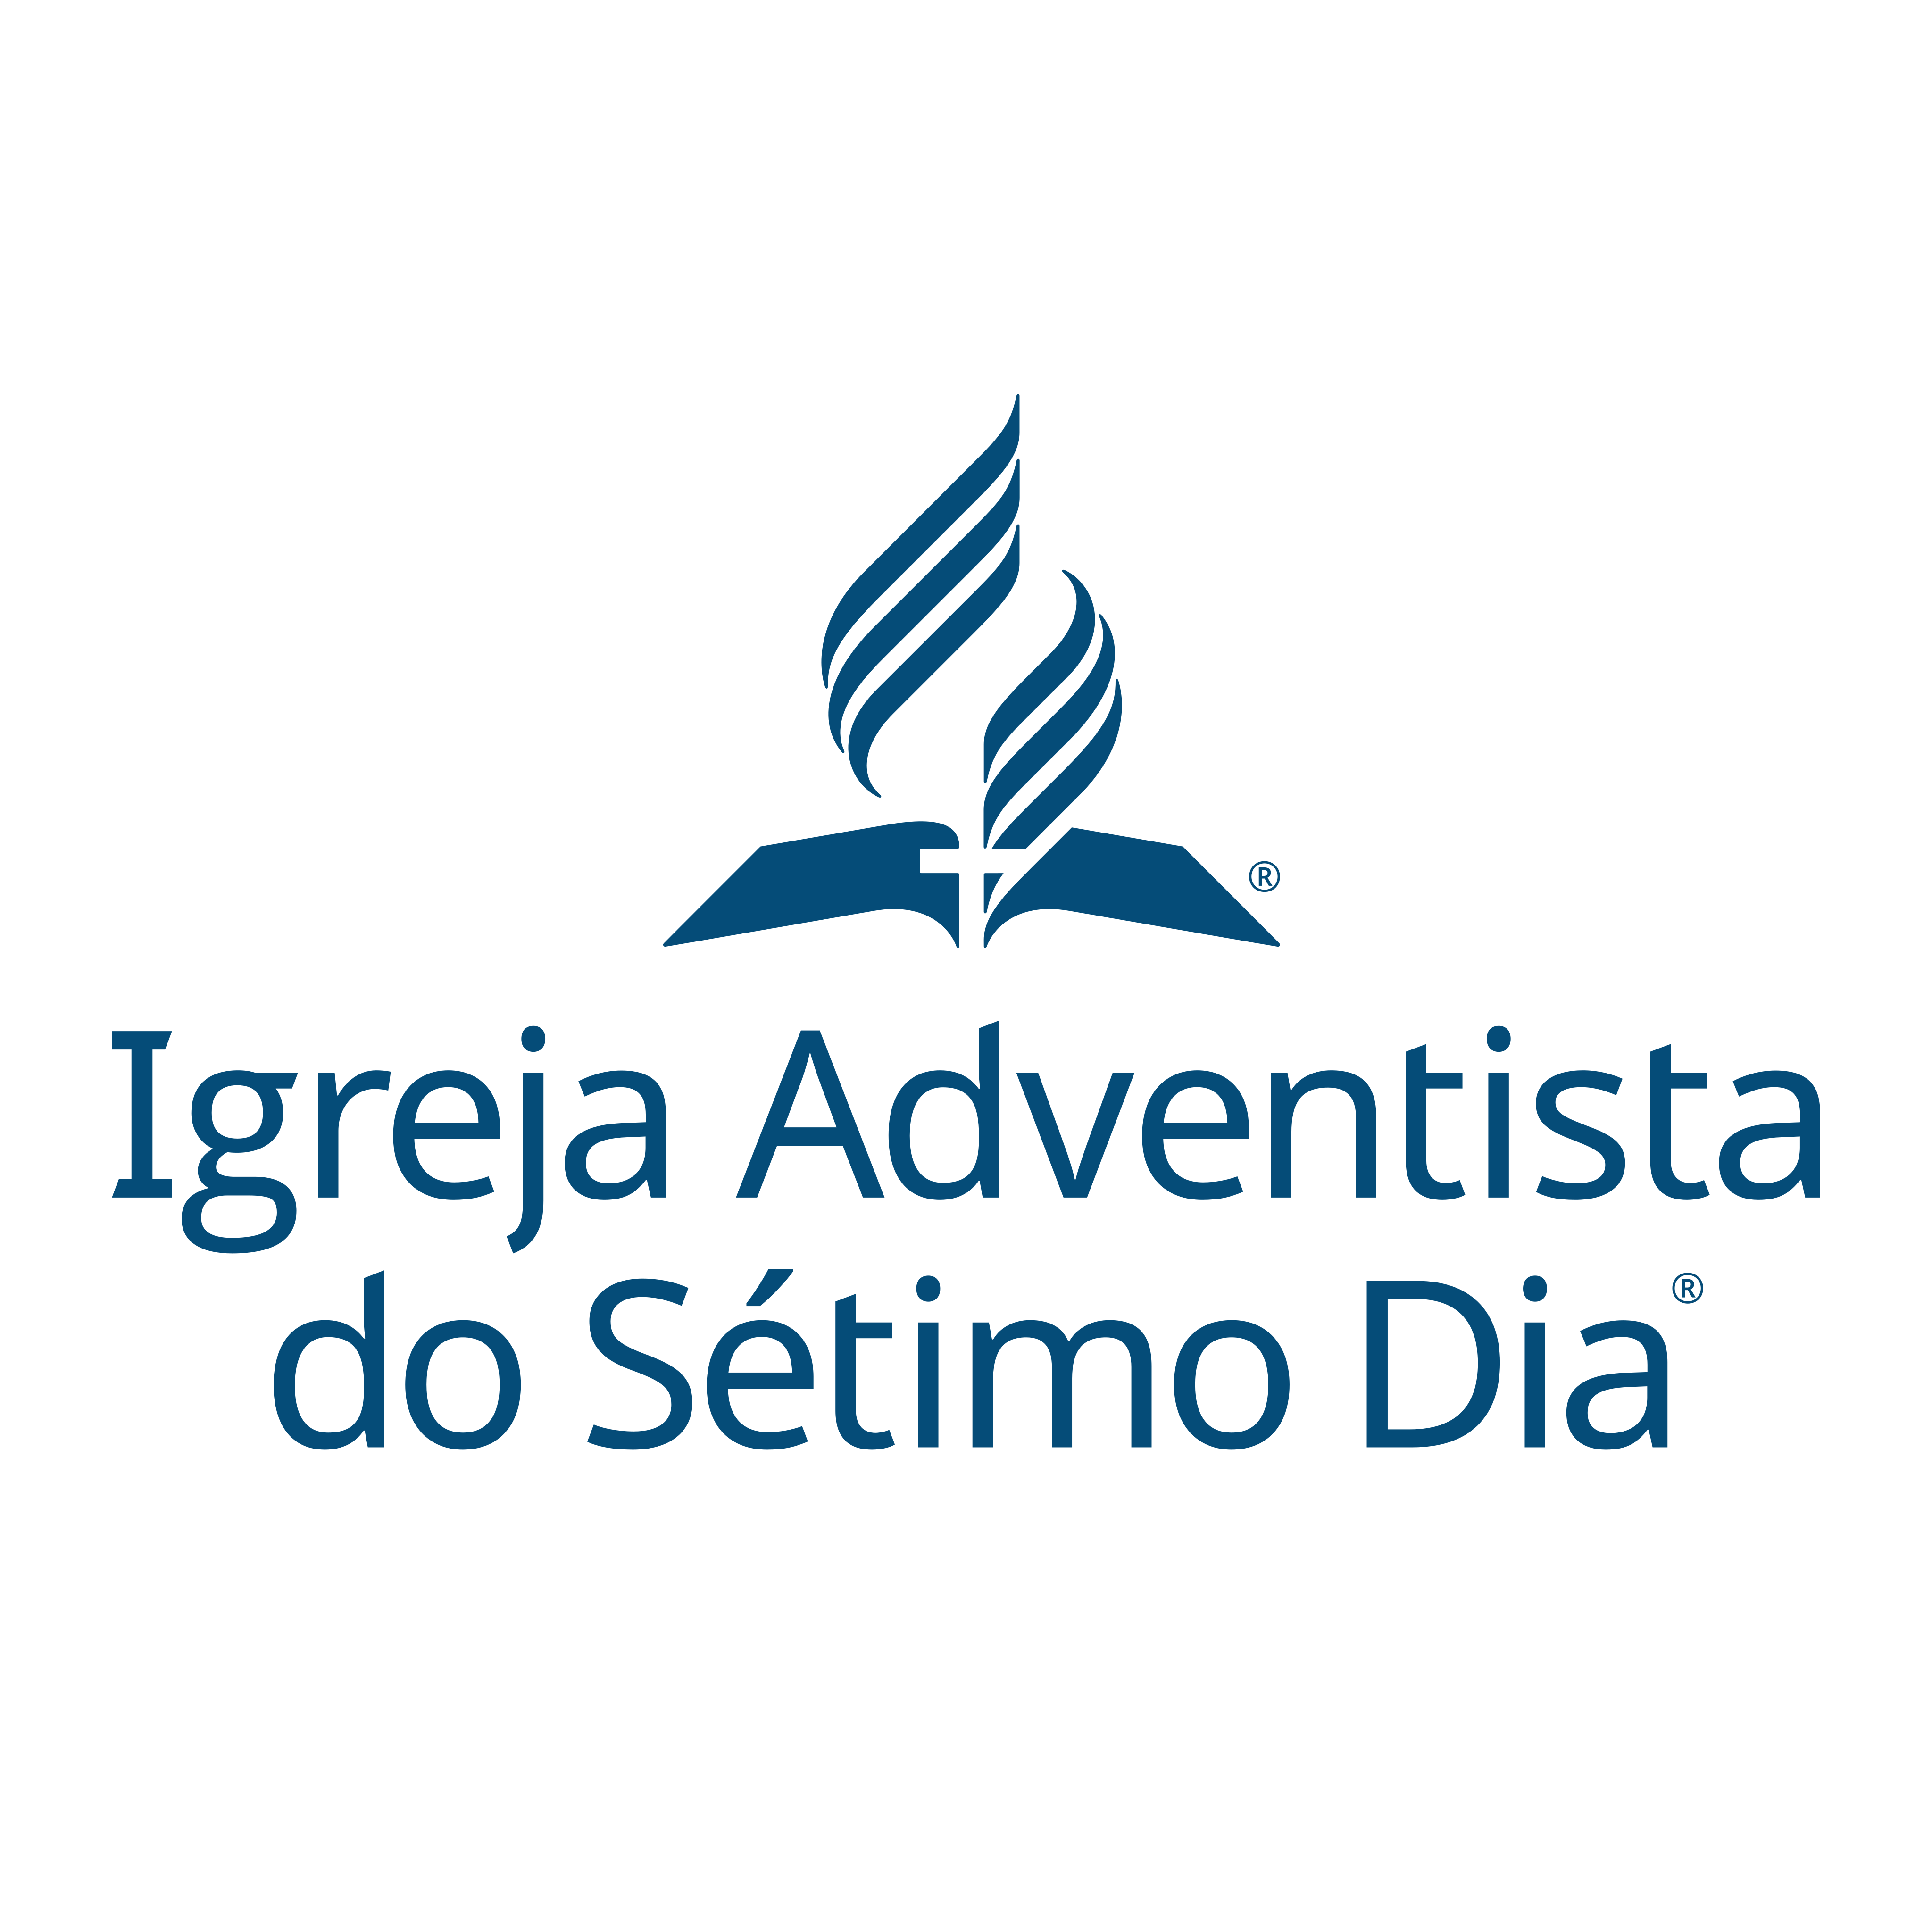 Igreja Adventista do Sétimo Dia Logo PNG.